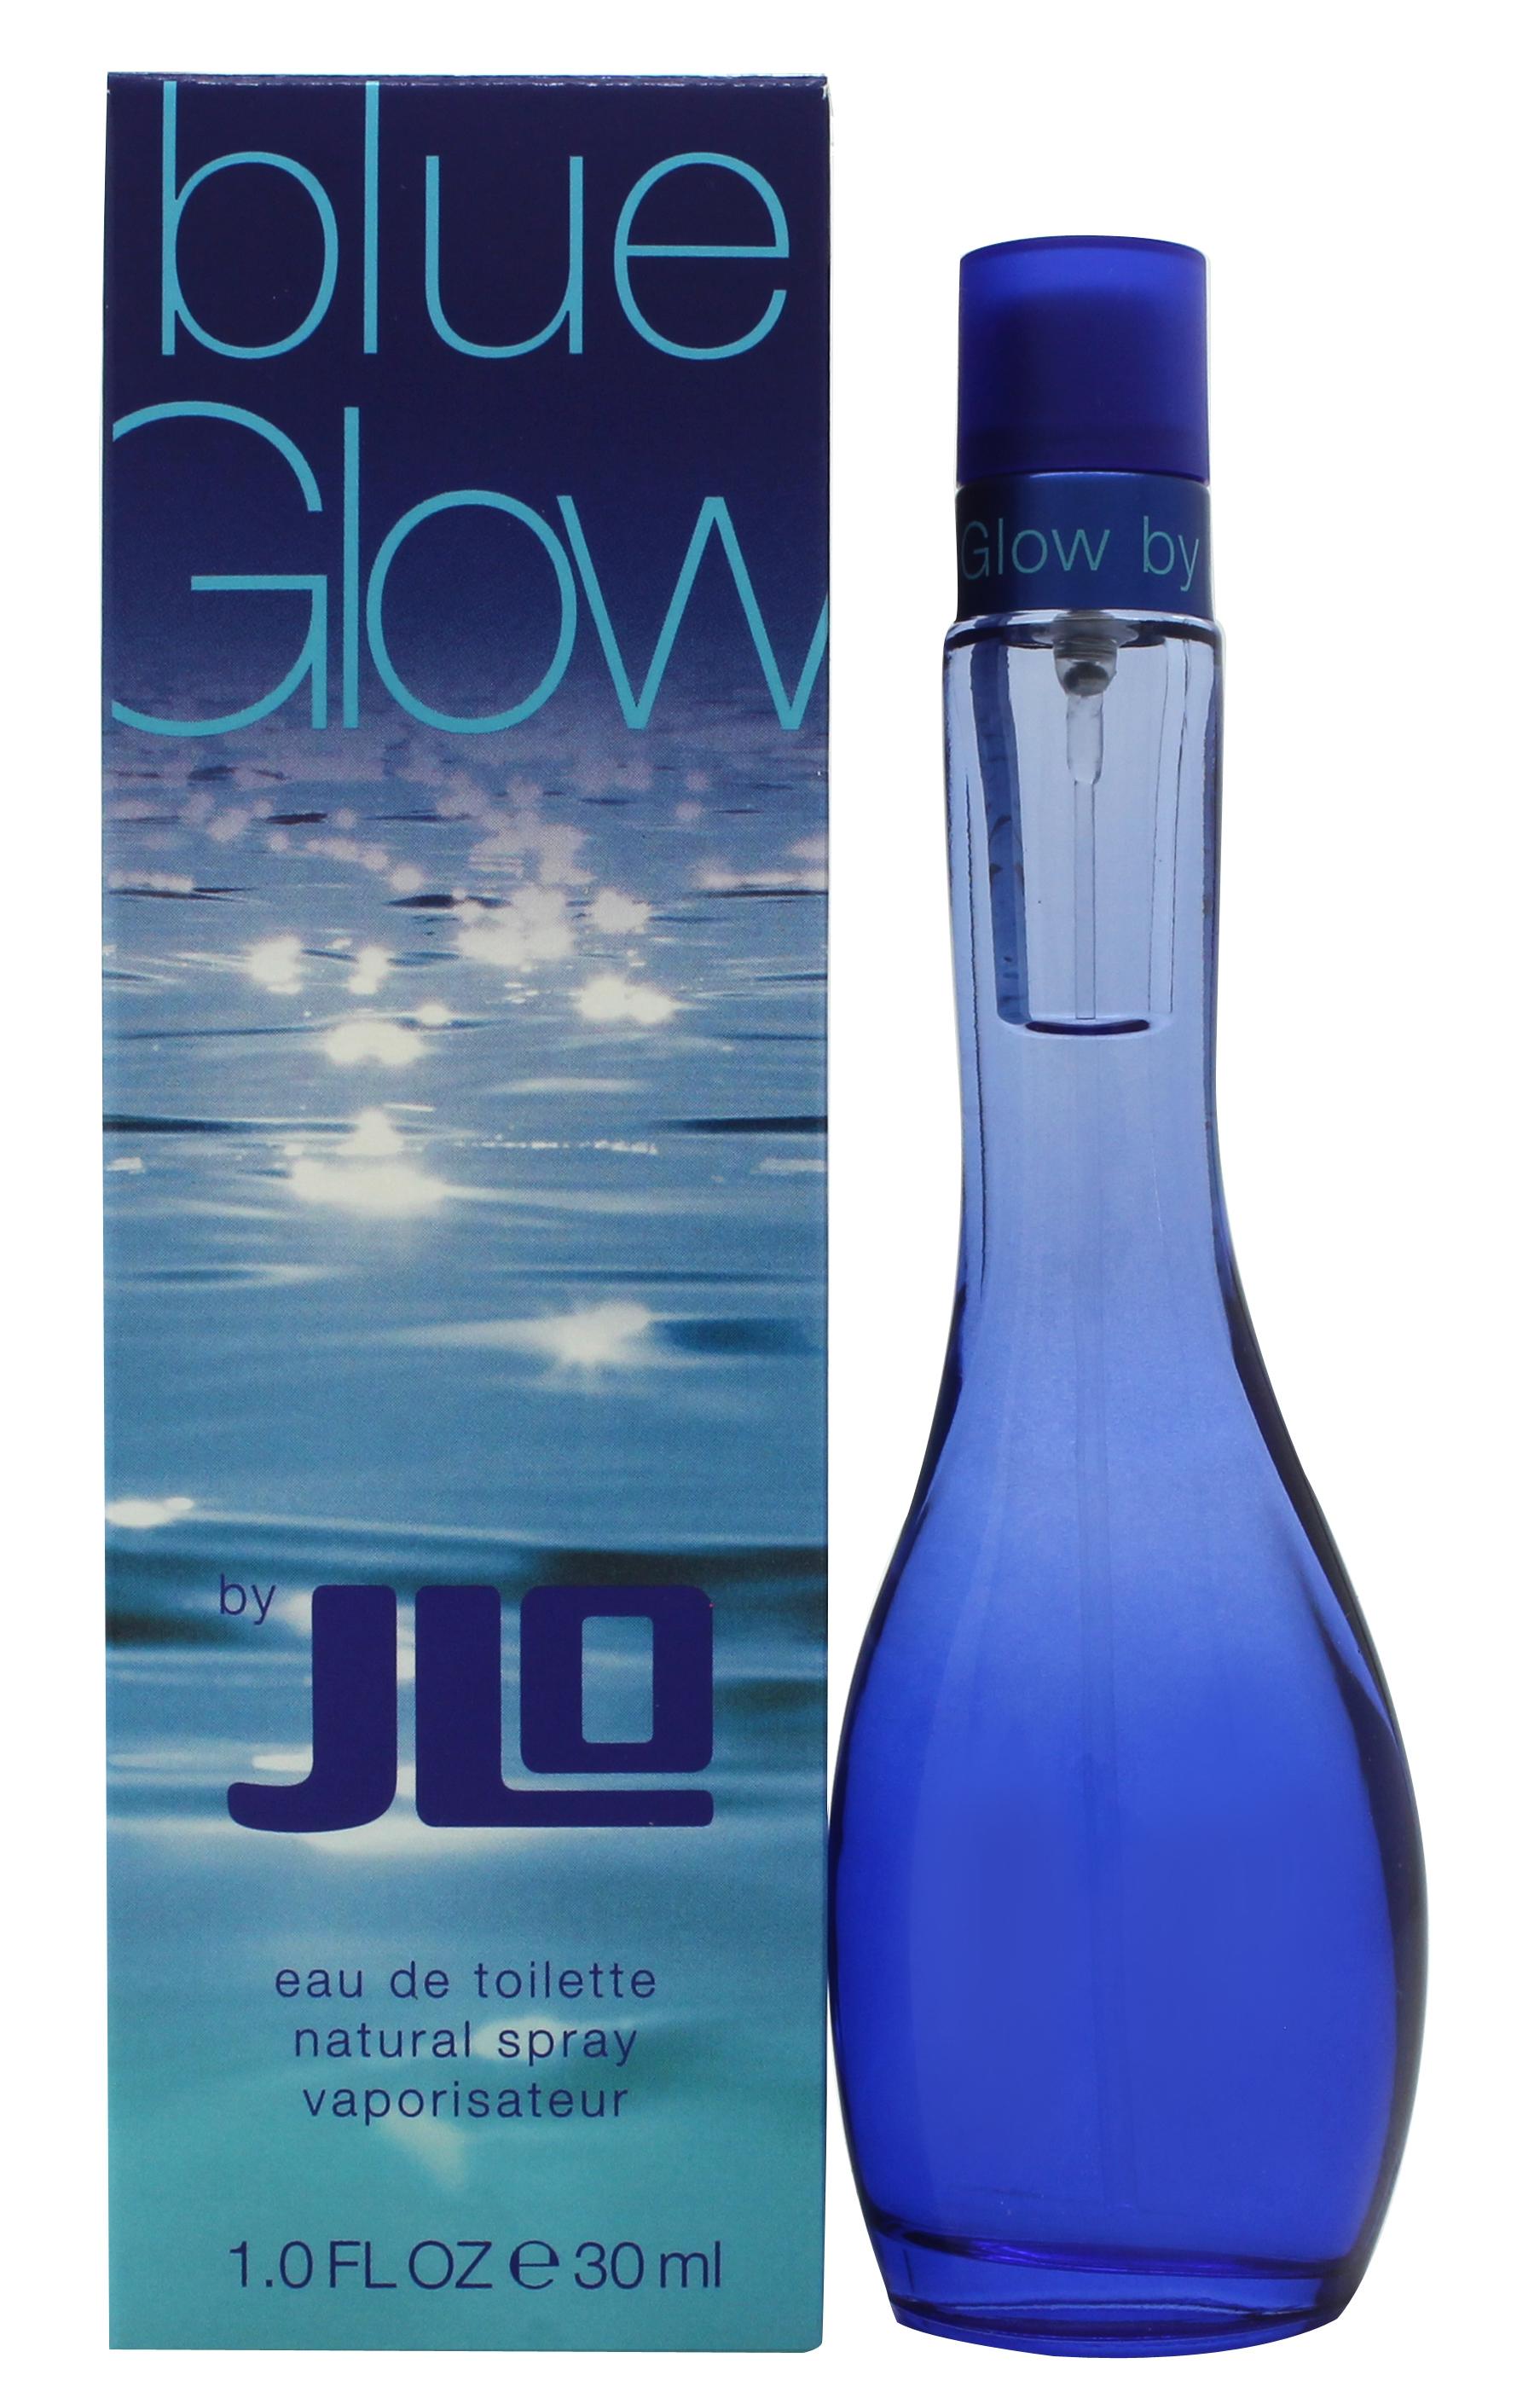 Jennifer Lopez Blue Glow Eau de Toilette 30ml Spray